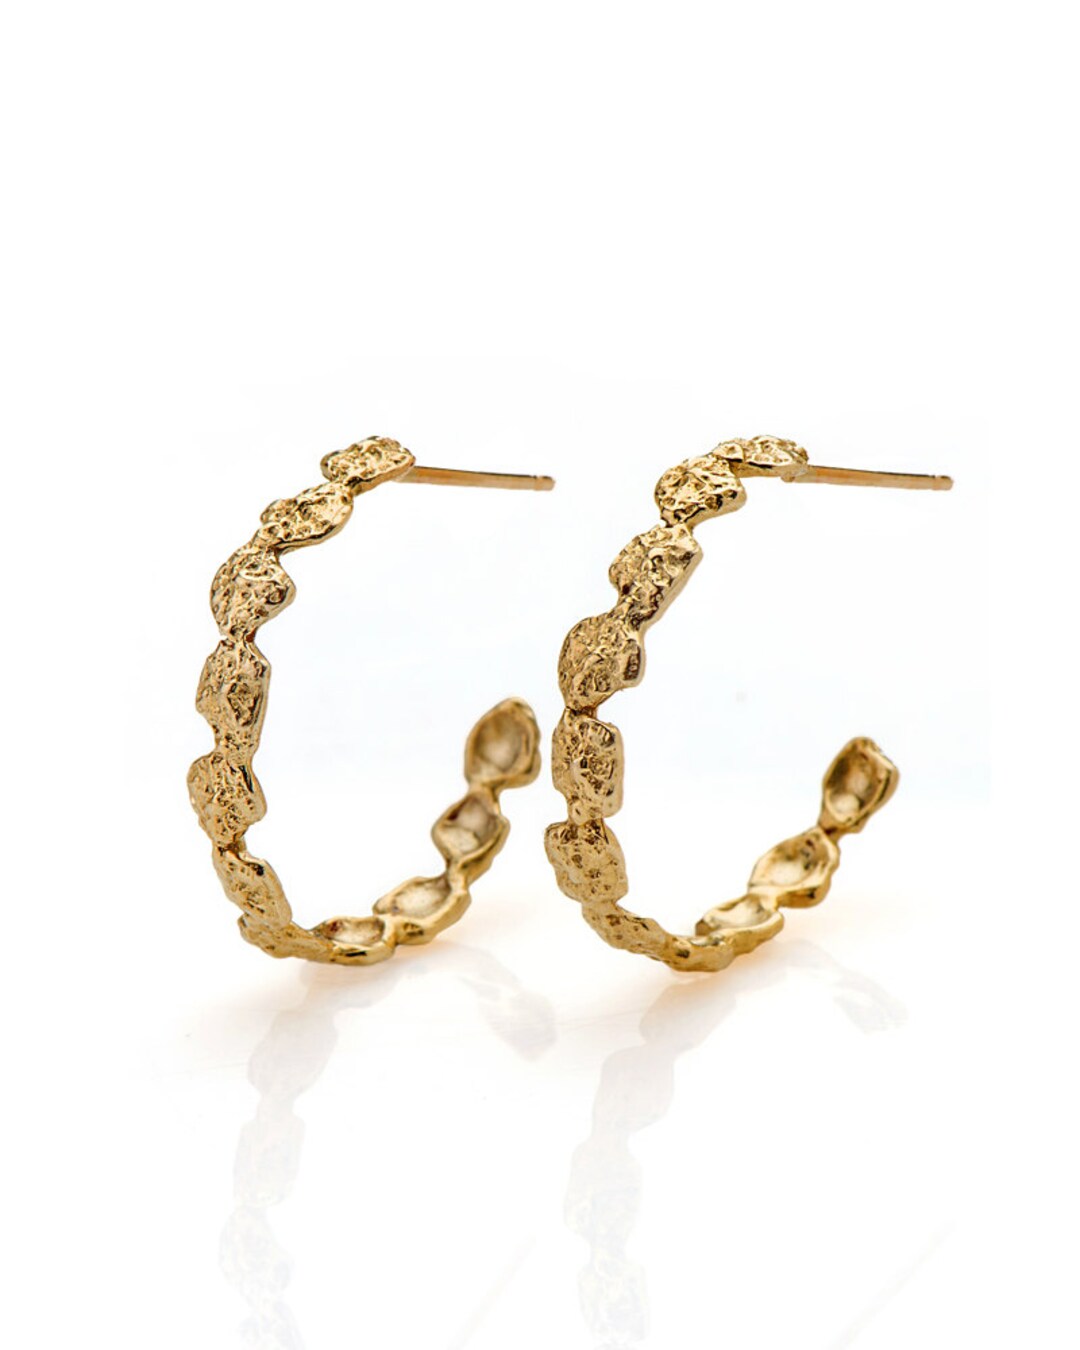 Nature Inspires Solid Gold Hoop Earrings 14k Gold Earrings - Etsy